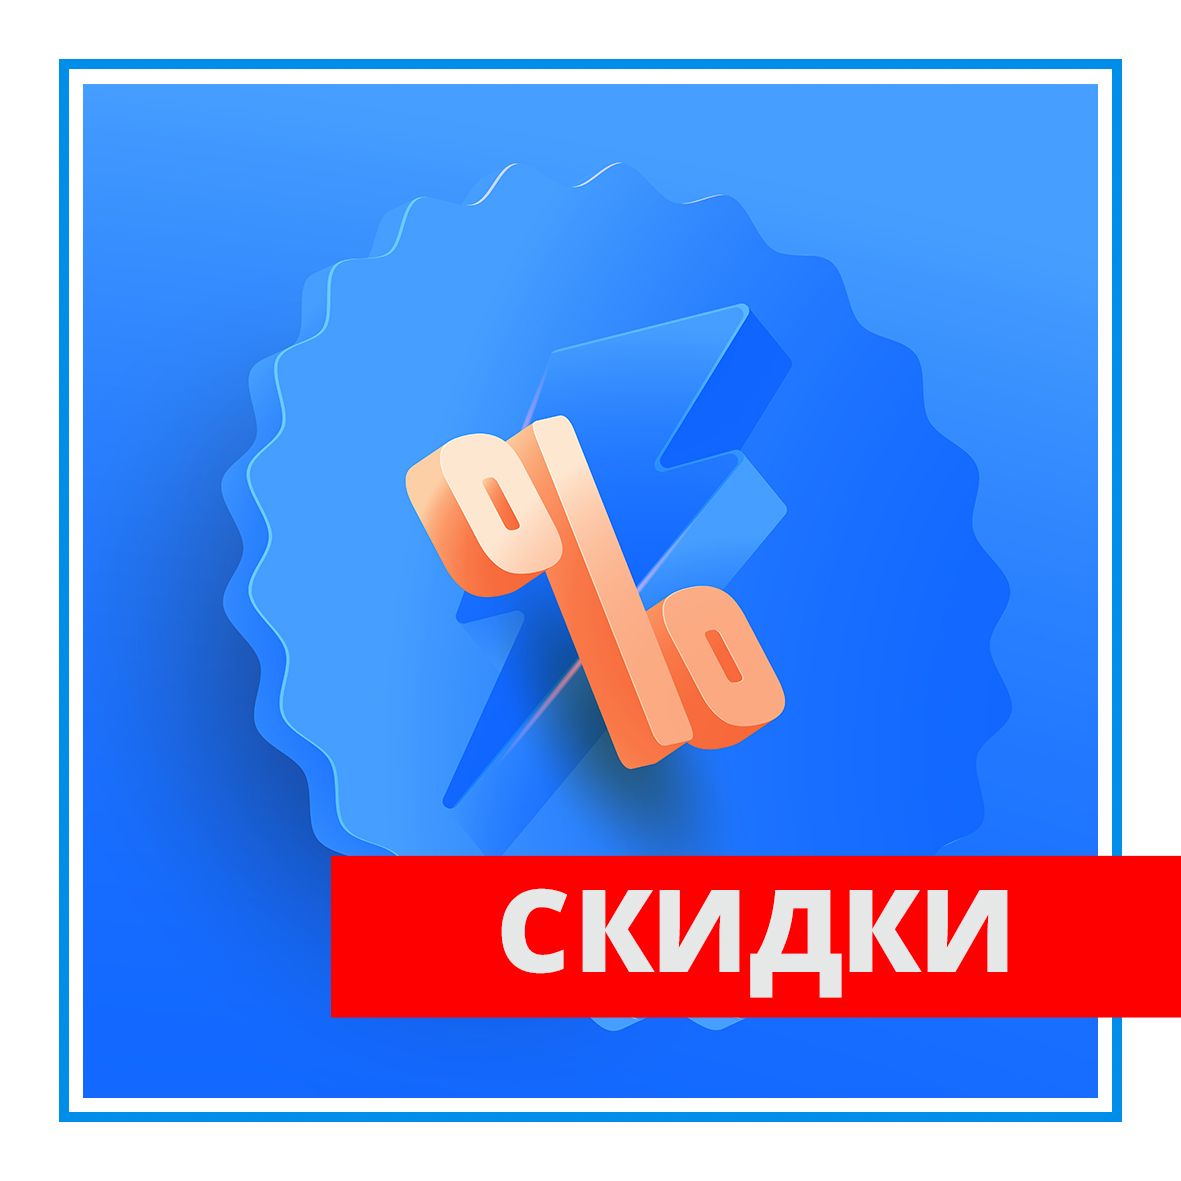 Скидки до 10% на покупки в филиале в Крыму